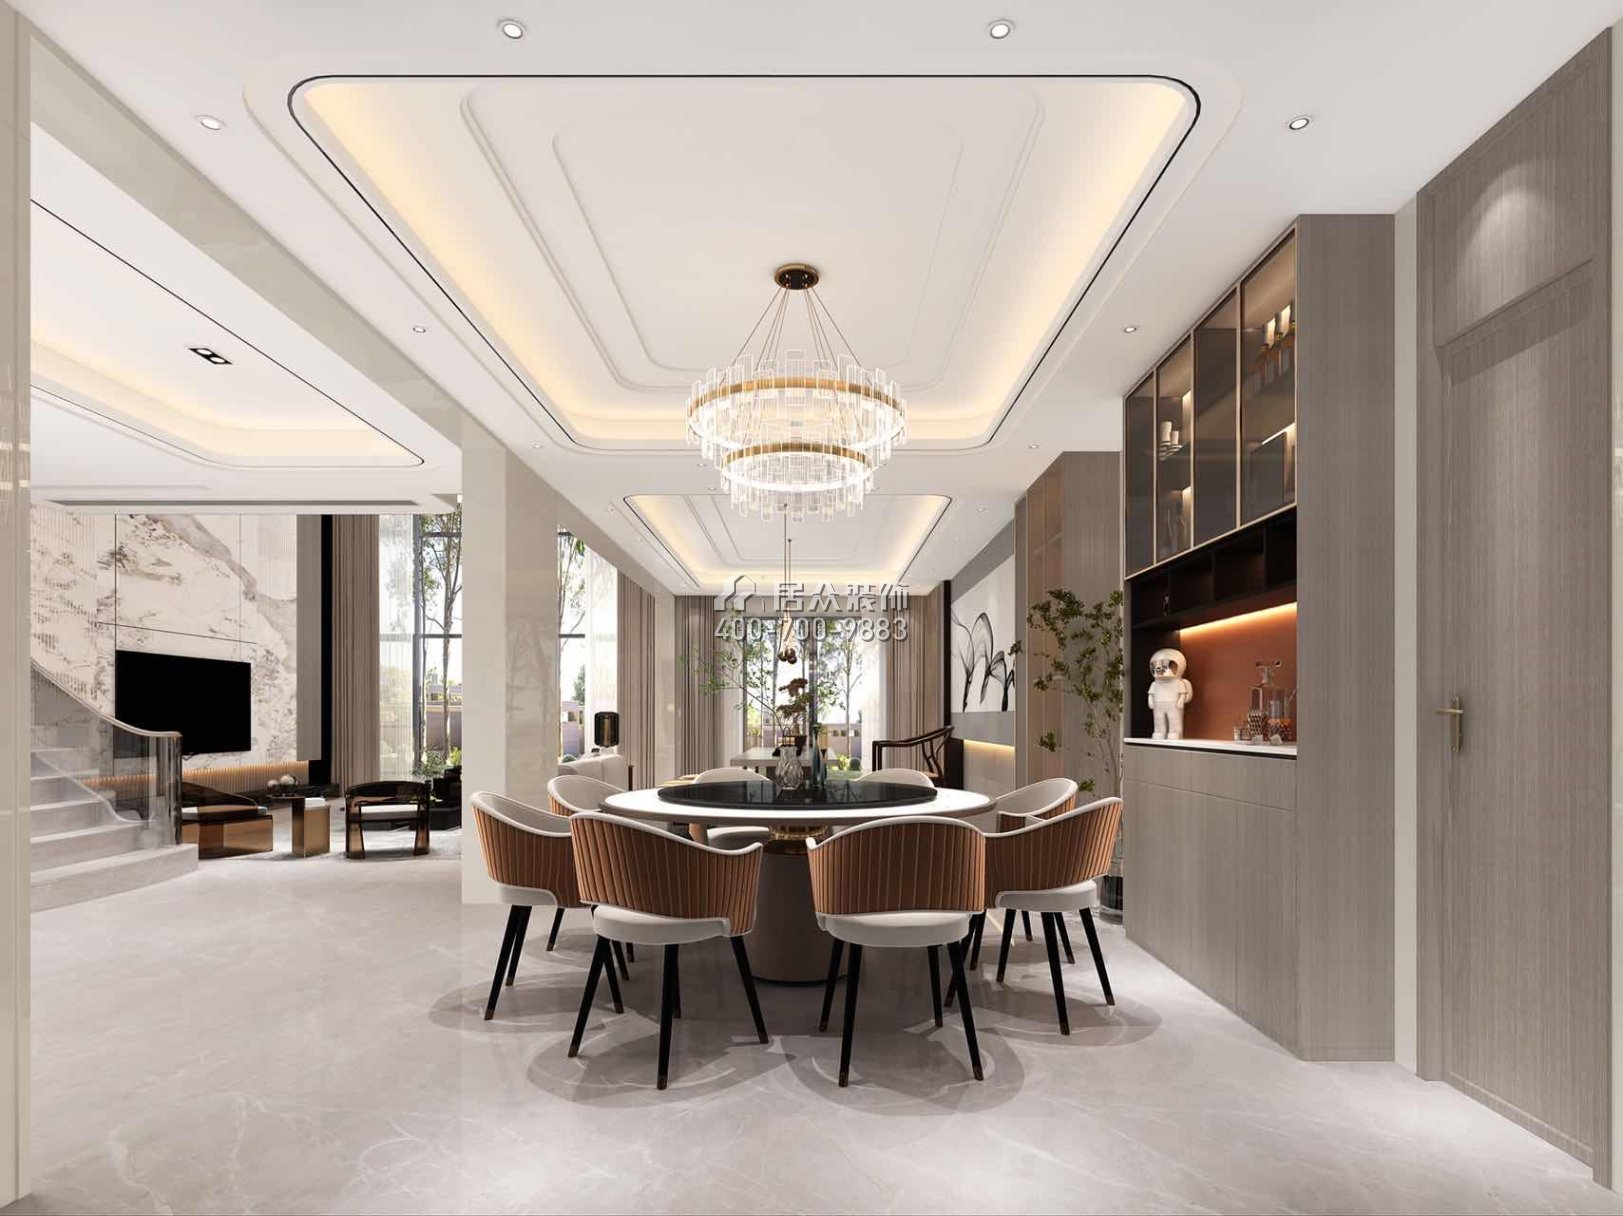 海逸豪庭321平方米現代簡約風格別墅戶型餐廳裝修效果圖